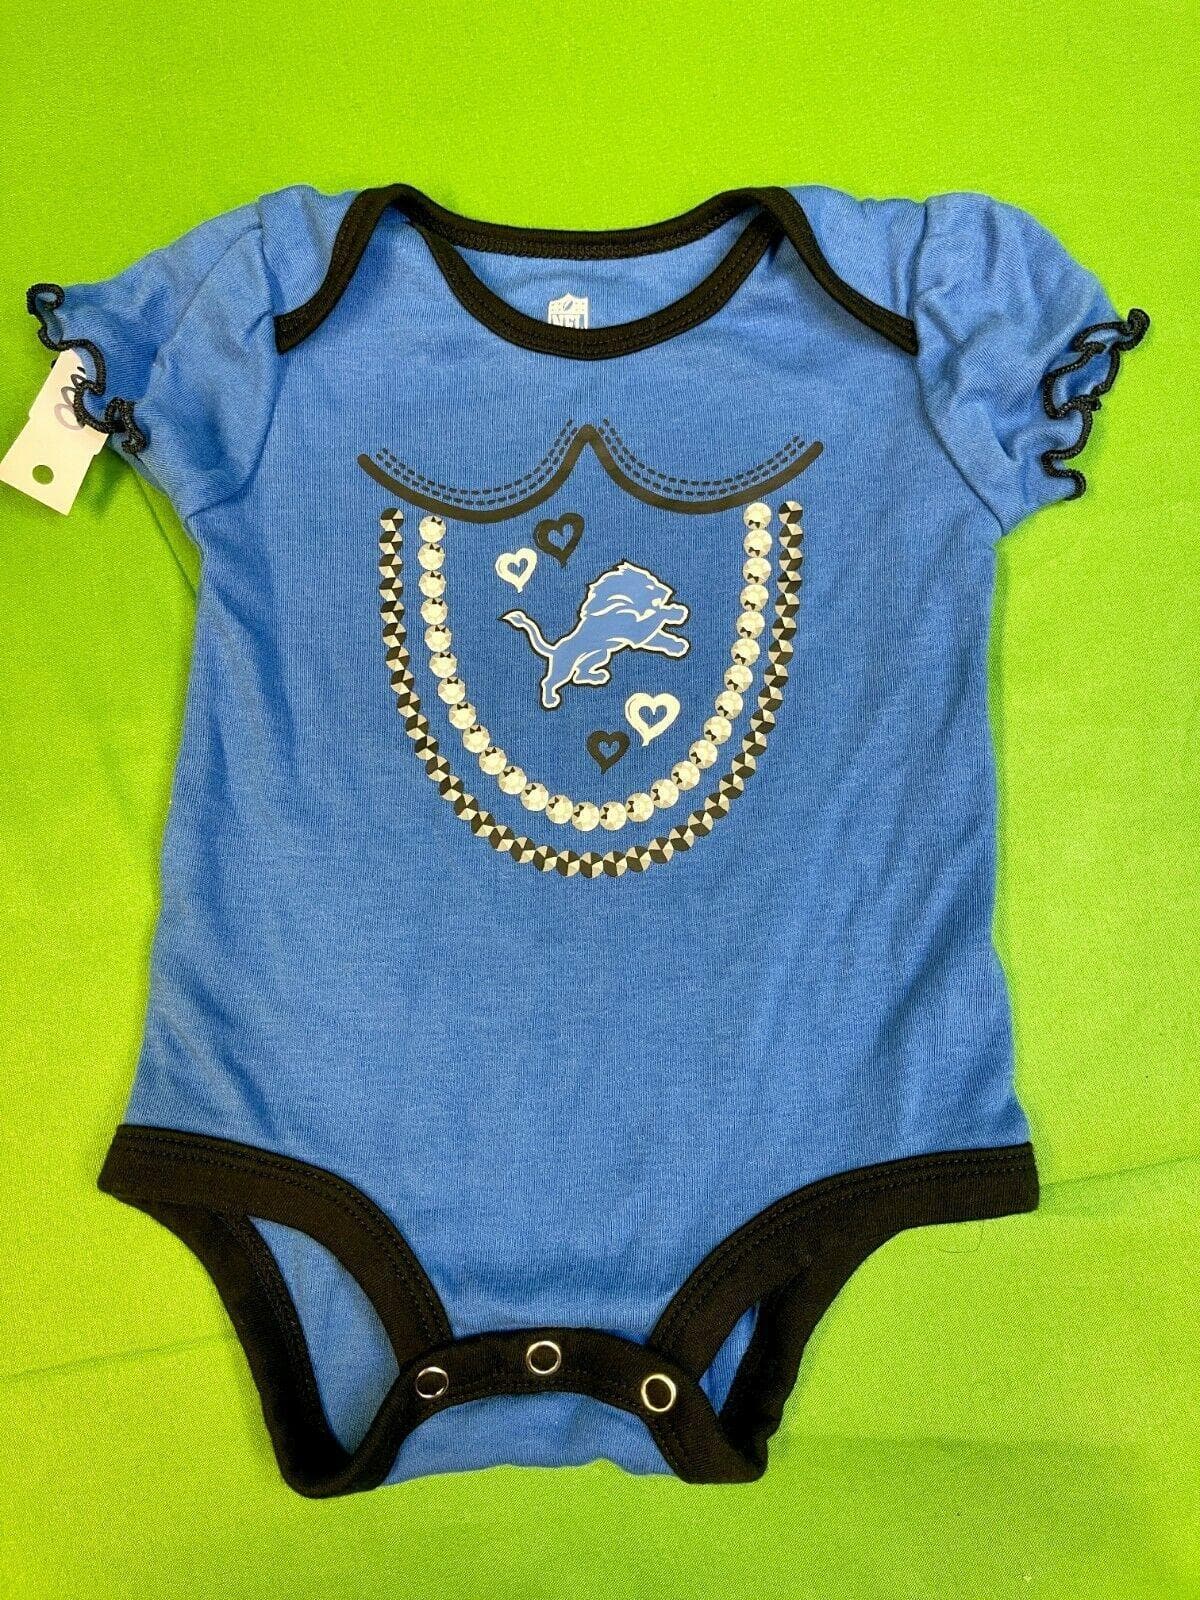 NFL Detroit Lions Bodysuit/Vest Girls' Blue Newborn 0-3 months